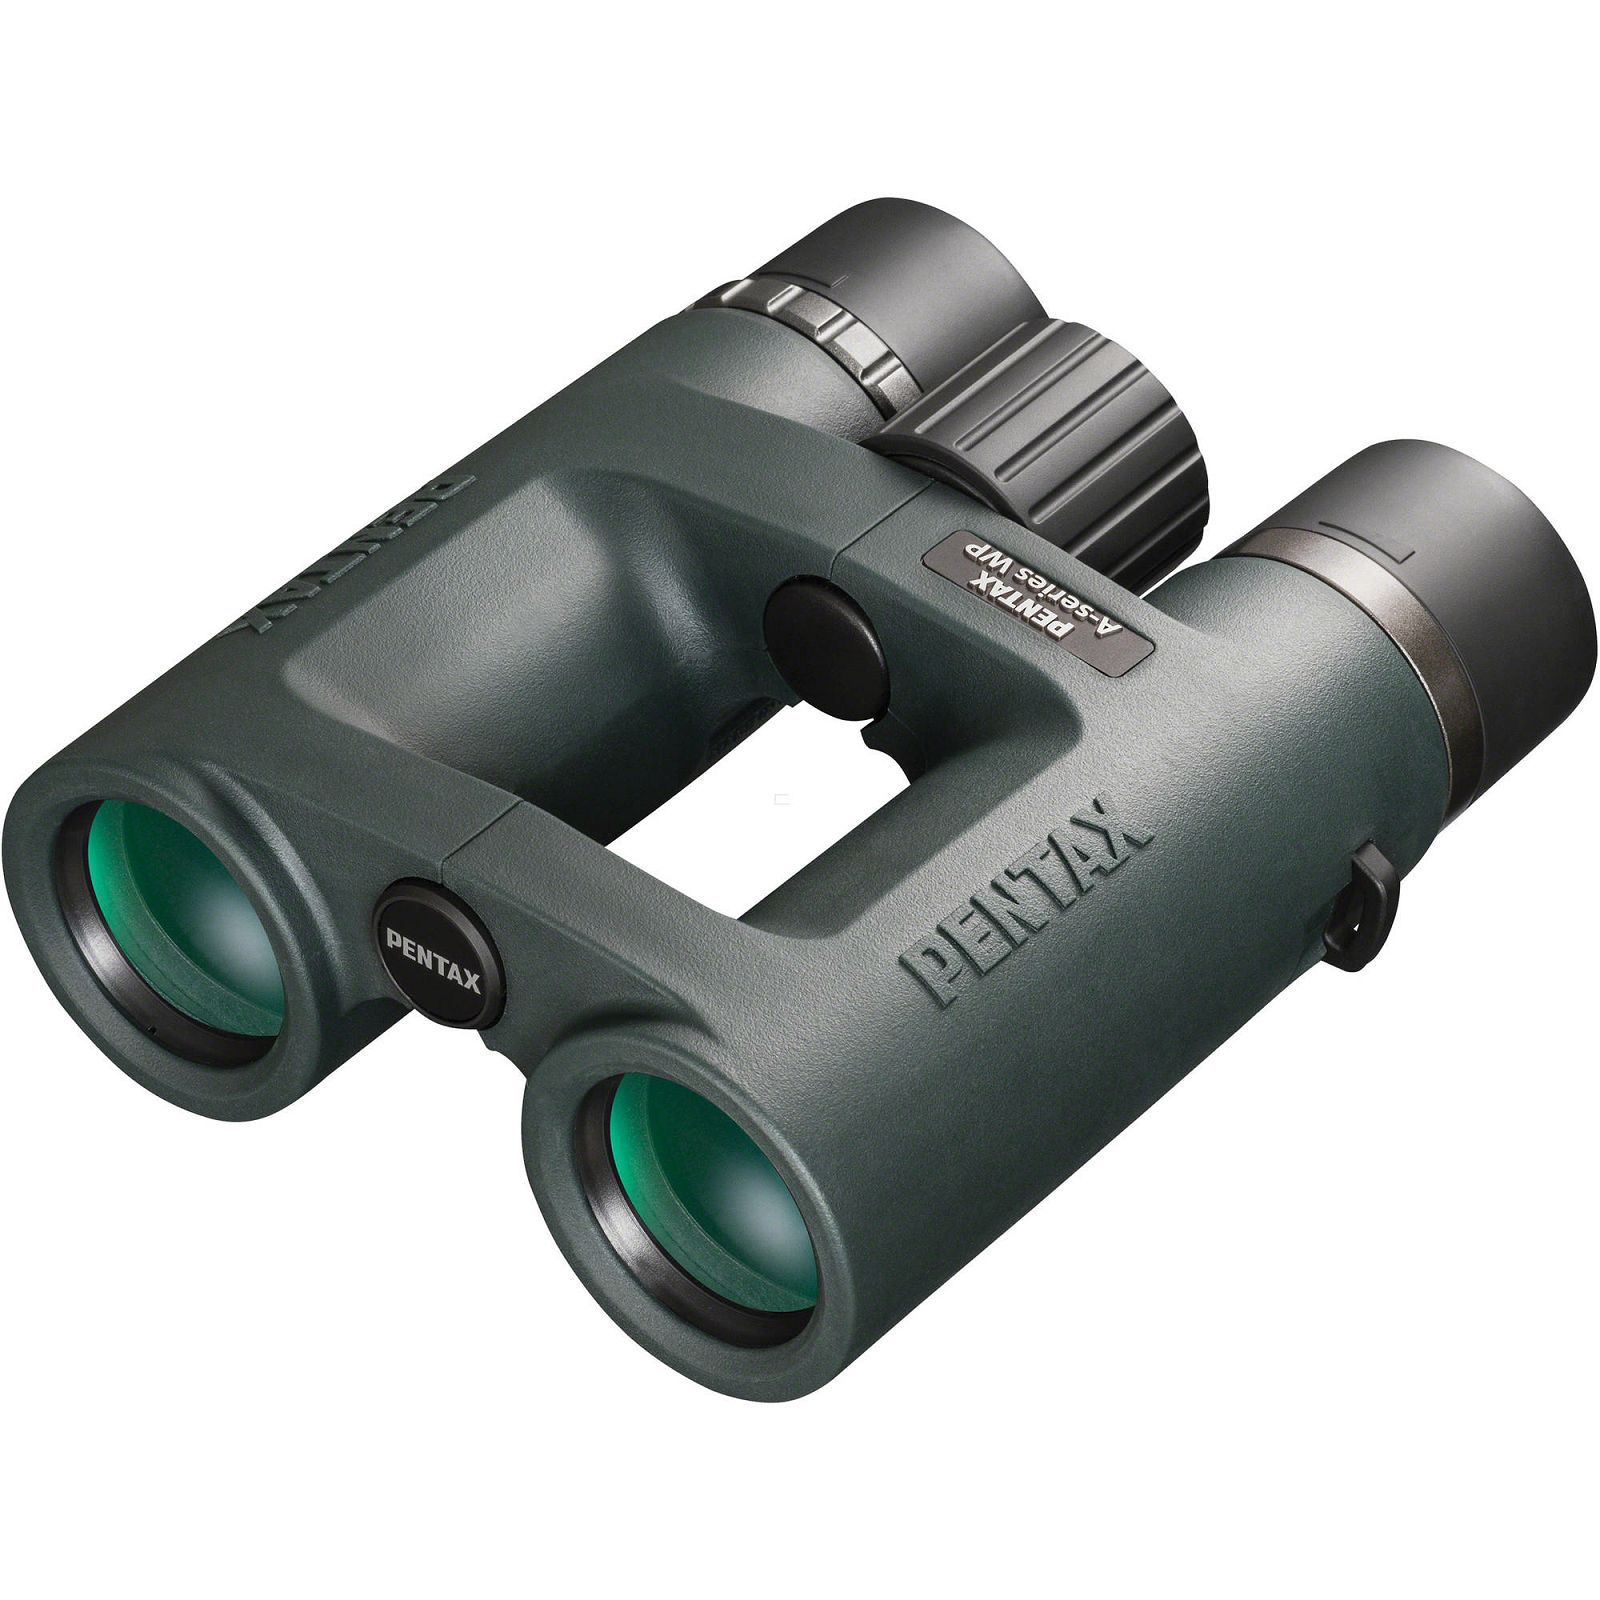 Pentax AD-Advanced 9x32 WP A serija dvogled dalekozor binocular